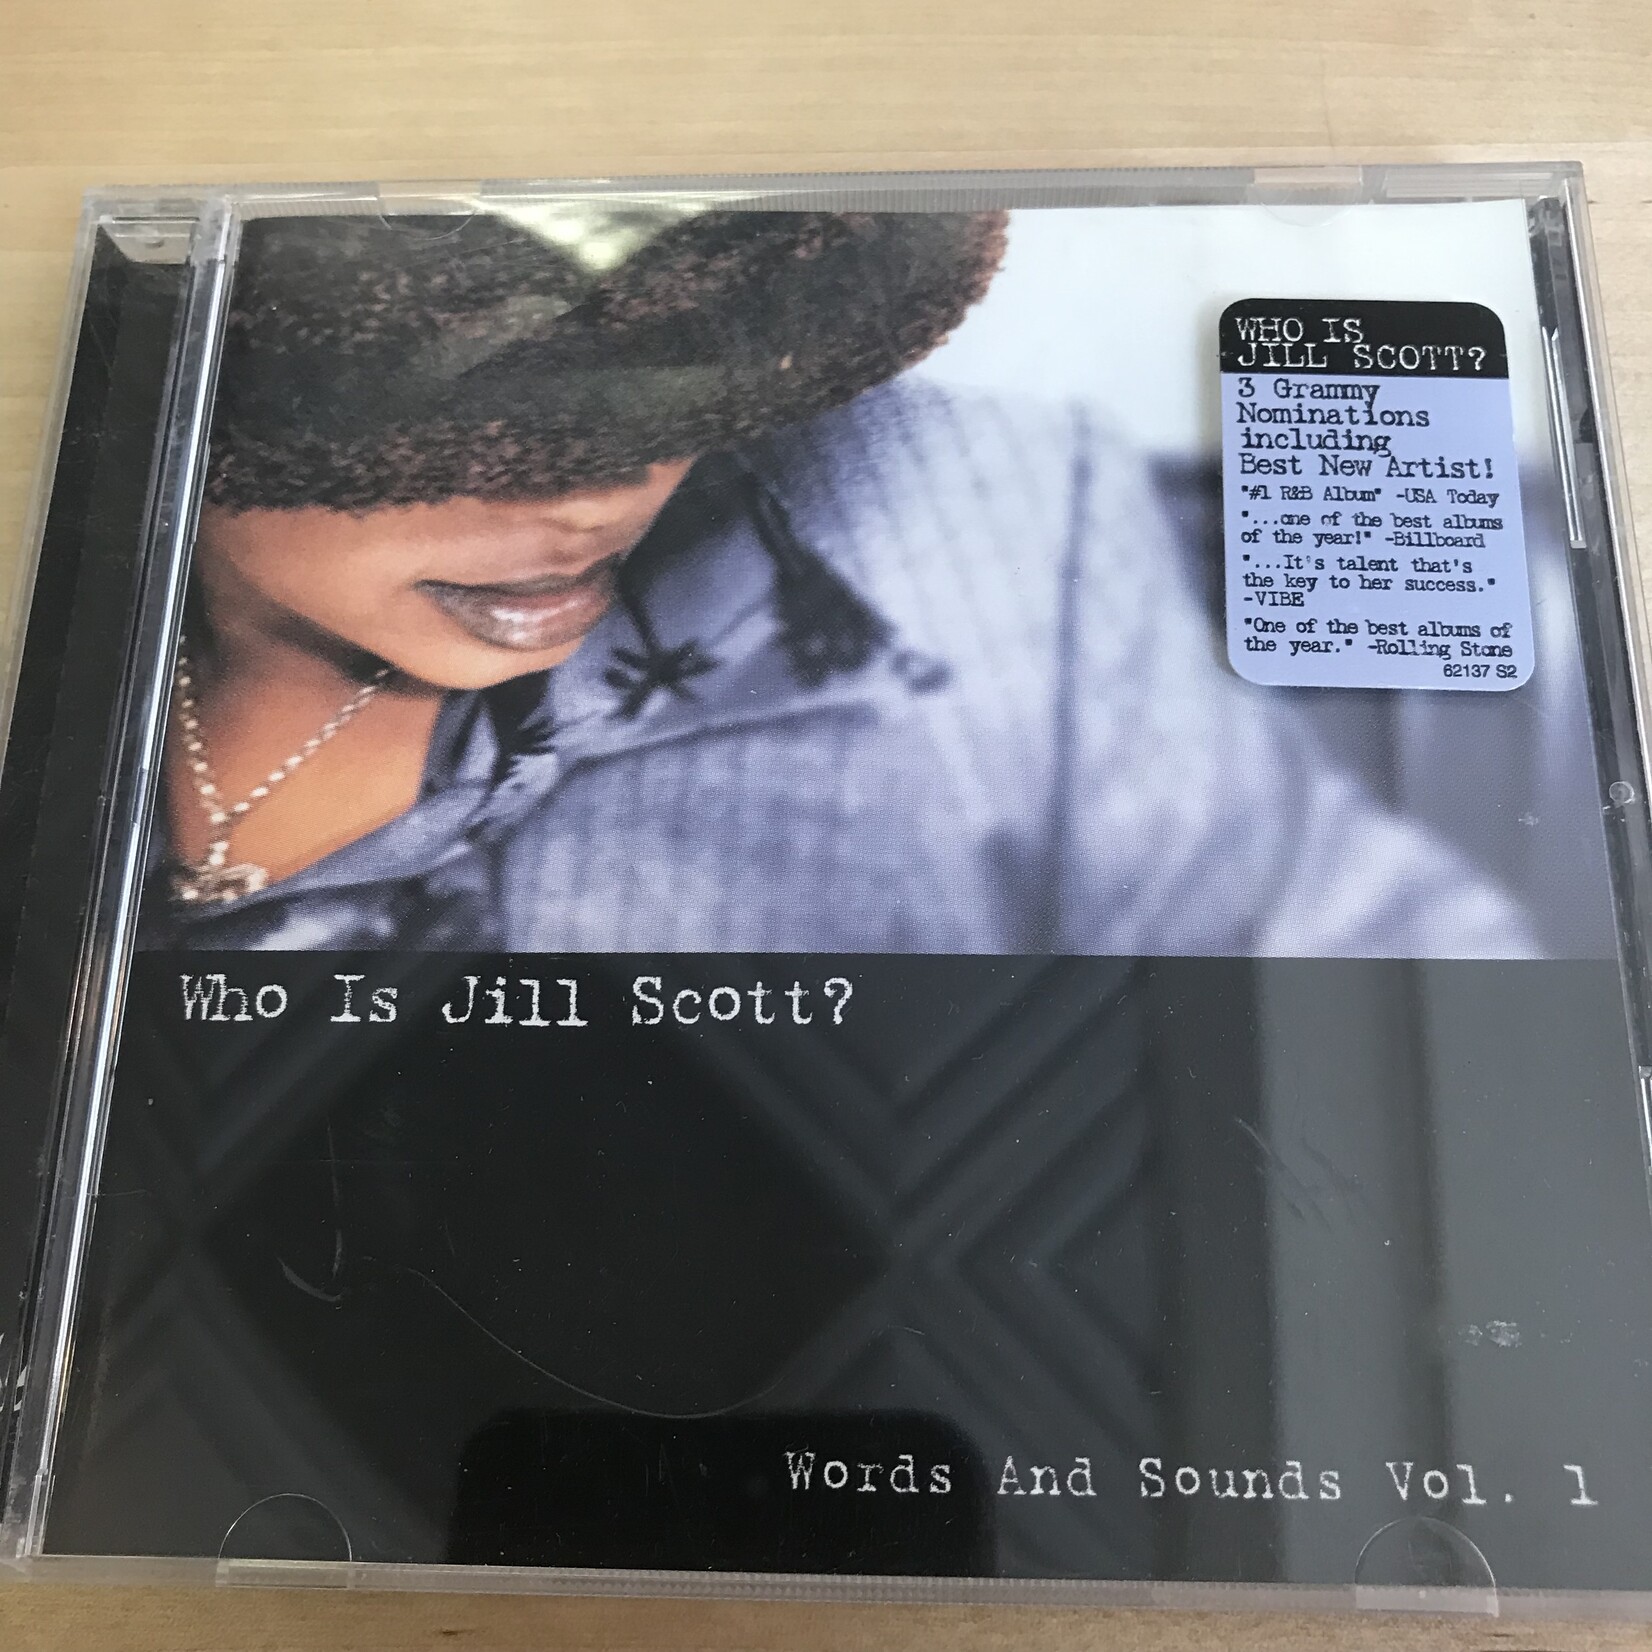 Jill Scott - Who Is Jill Scott? Words & Sounds Vol. 1 - CD (USED)